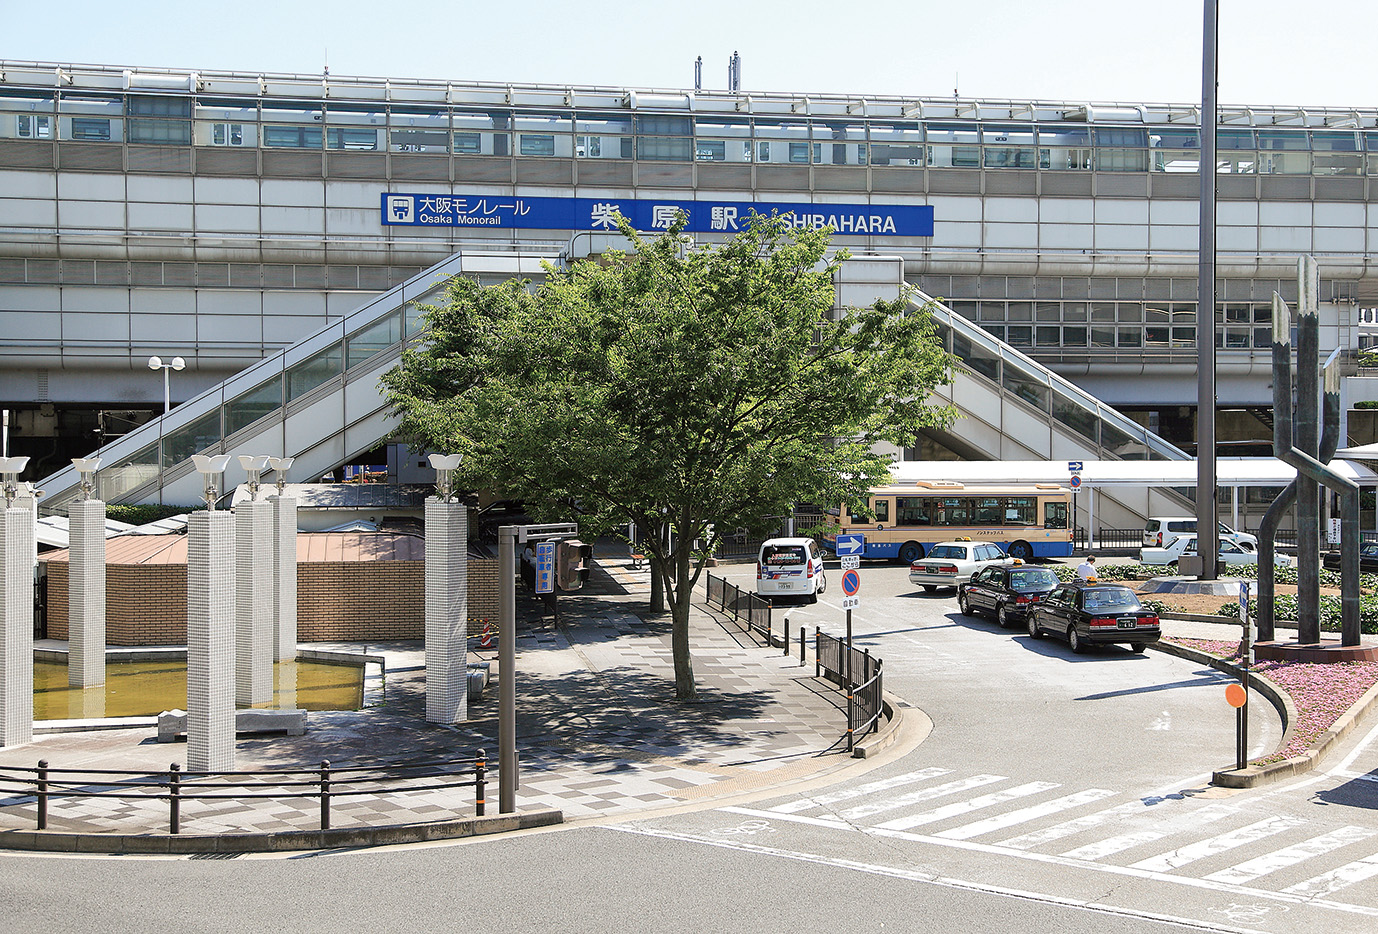  大阪モノレール本線「柴原阪大前」駅